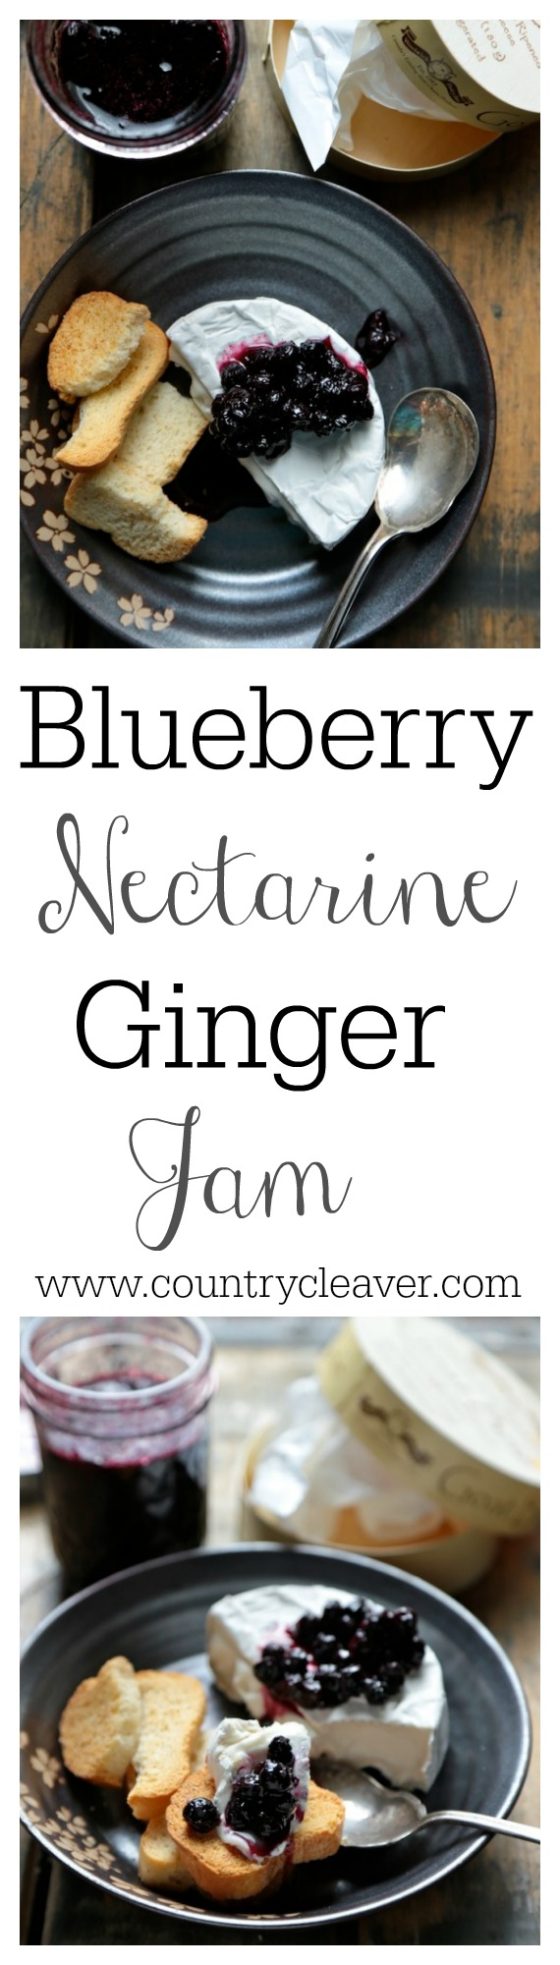 Blueberry Nectarine Ginger Jam